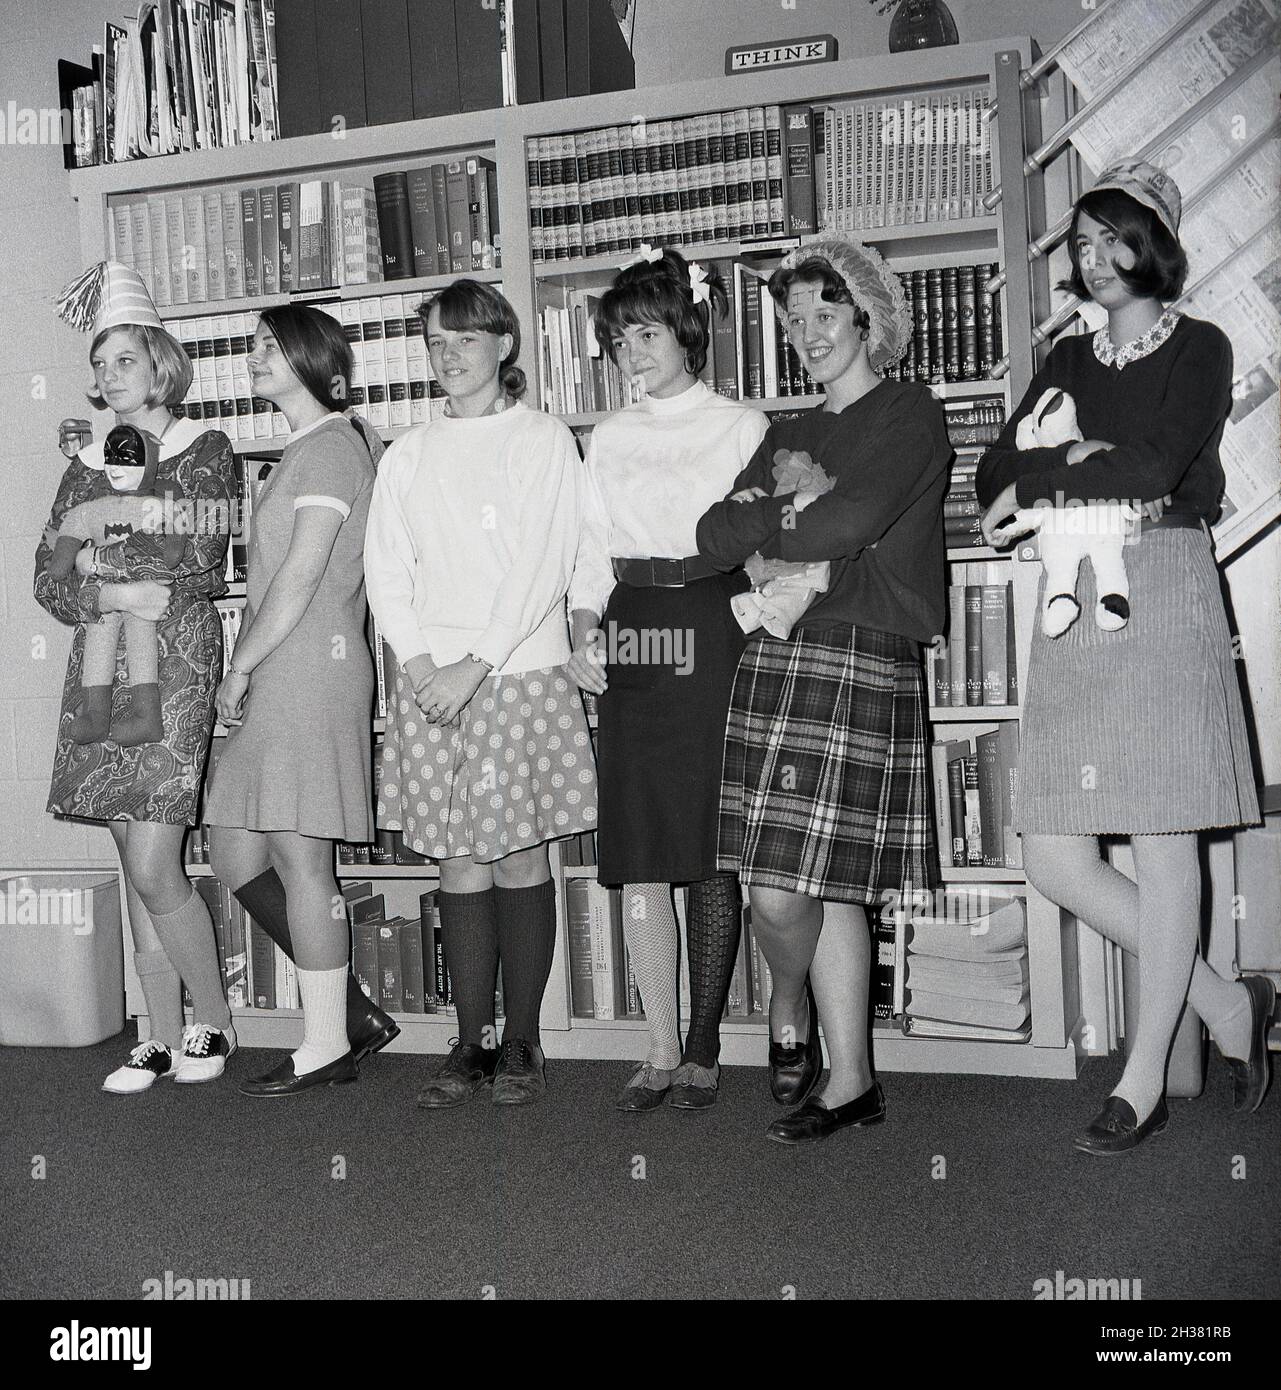 Années 1960, jeunes élèves du secondaire, dans une salle d'étude ou une section d'une bibliothèque debout en ligne, trois d'entre eux tenant des jouets mous, avec une fille à gauche portant un chapeau de fête et tenant une poupée batman, Virginie, États-Unis.Peut-être prendre part à une certaine sorte de classe sur le jeu imaginatif.Derrière eux, au-dessus d'une bibliothèque remplie de manuels, un signe disant PENSER. Banque D'Images